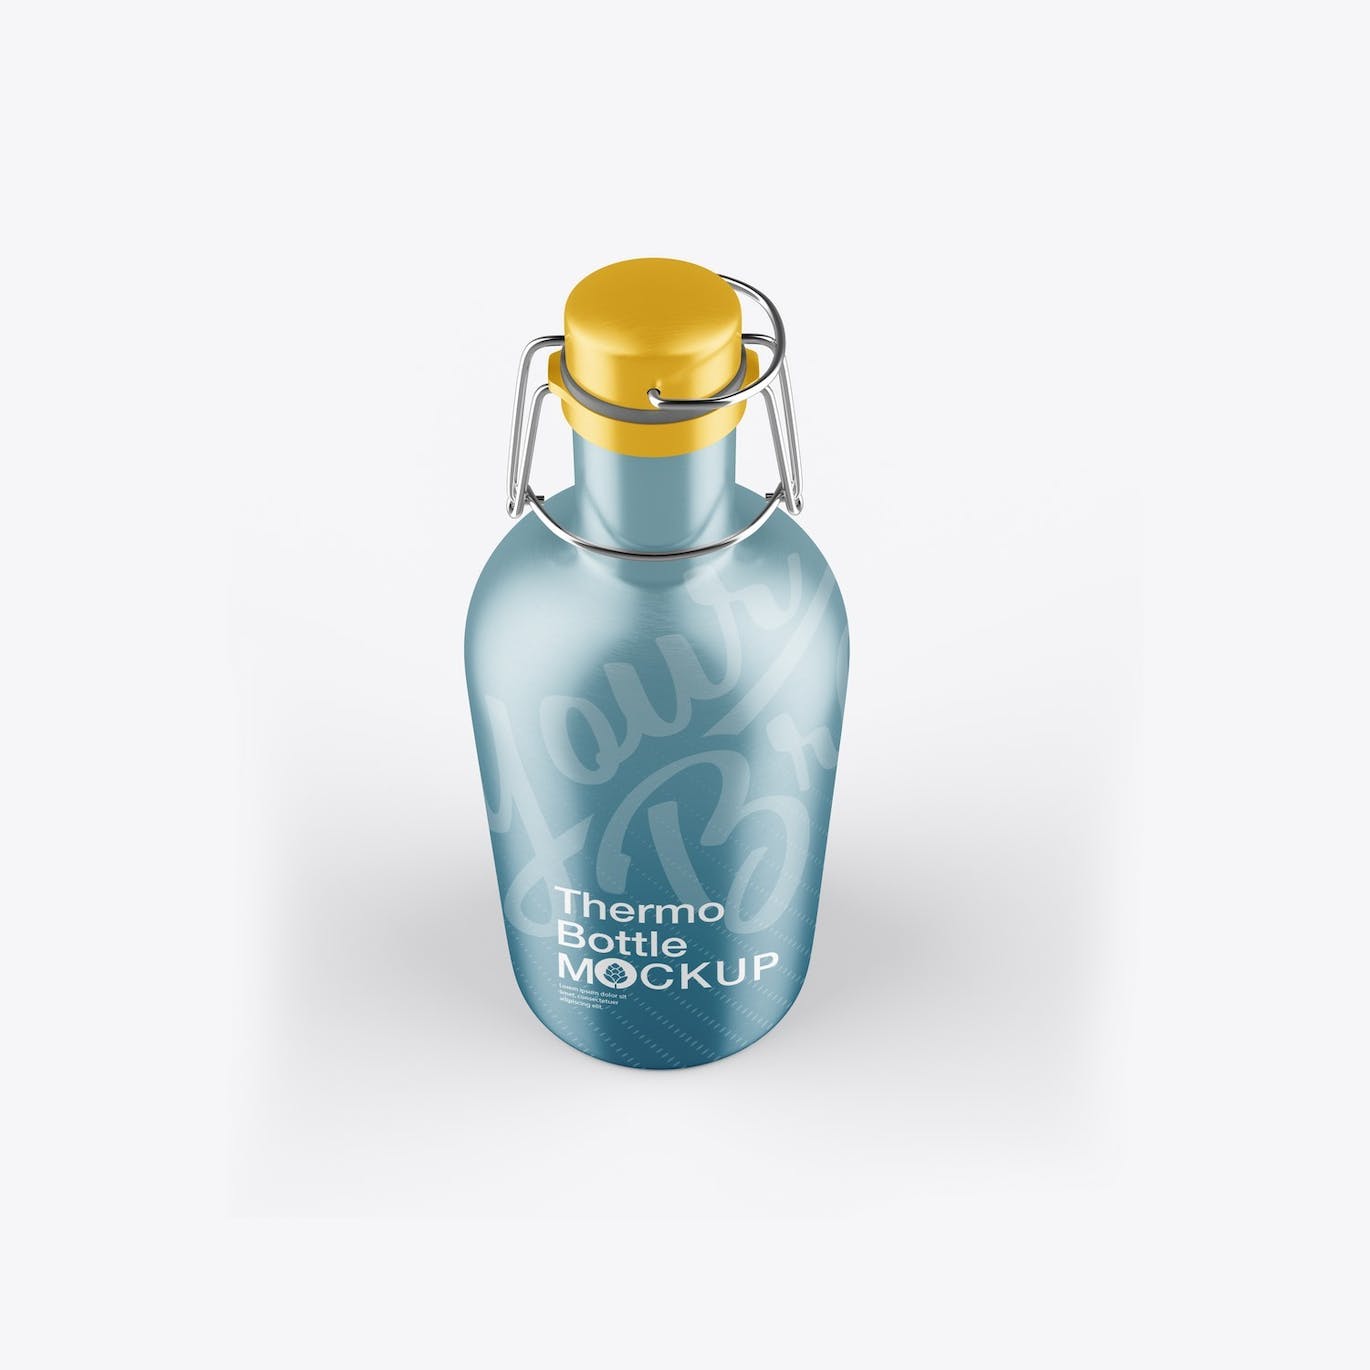 金属热水瓶包装设计样机 Thermo Bottle Mockup 样机素材 第9张